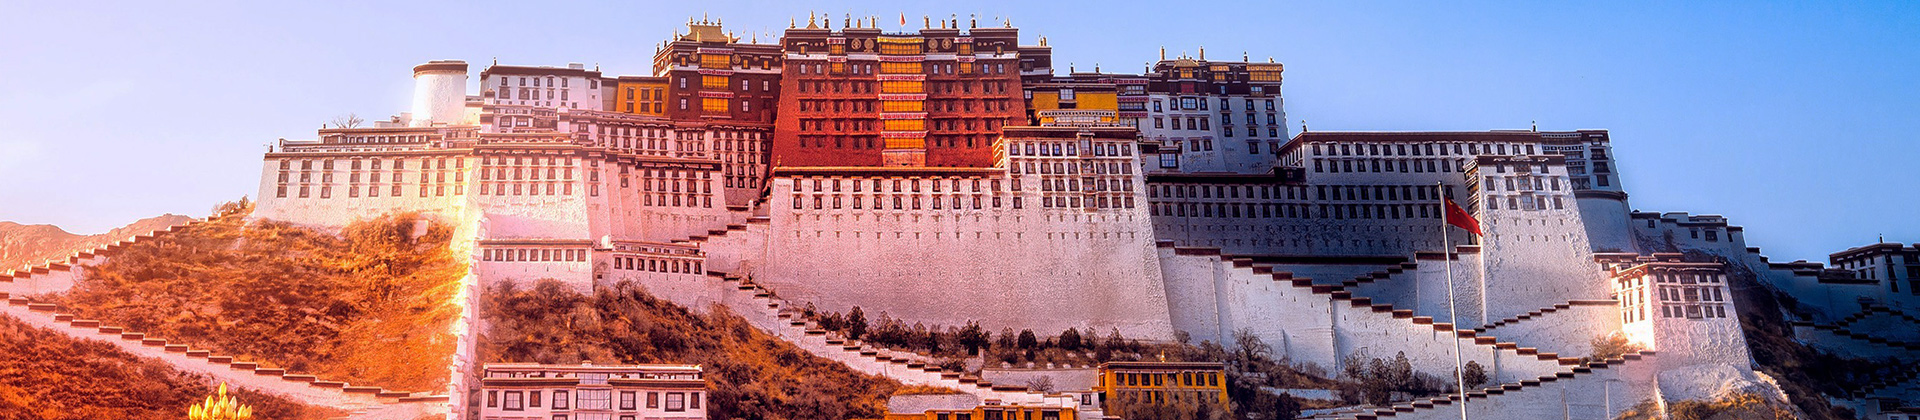 China Tibet Nepal Tour